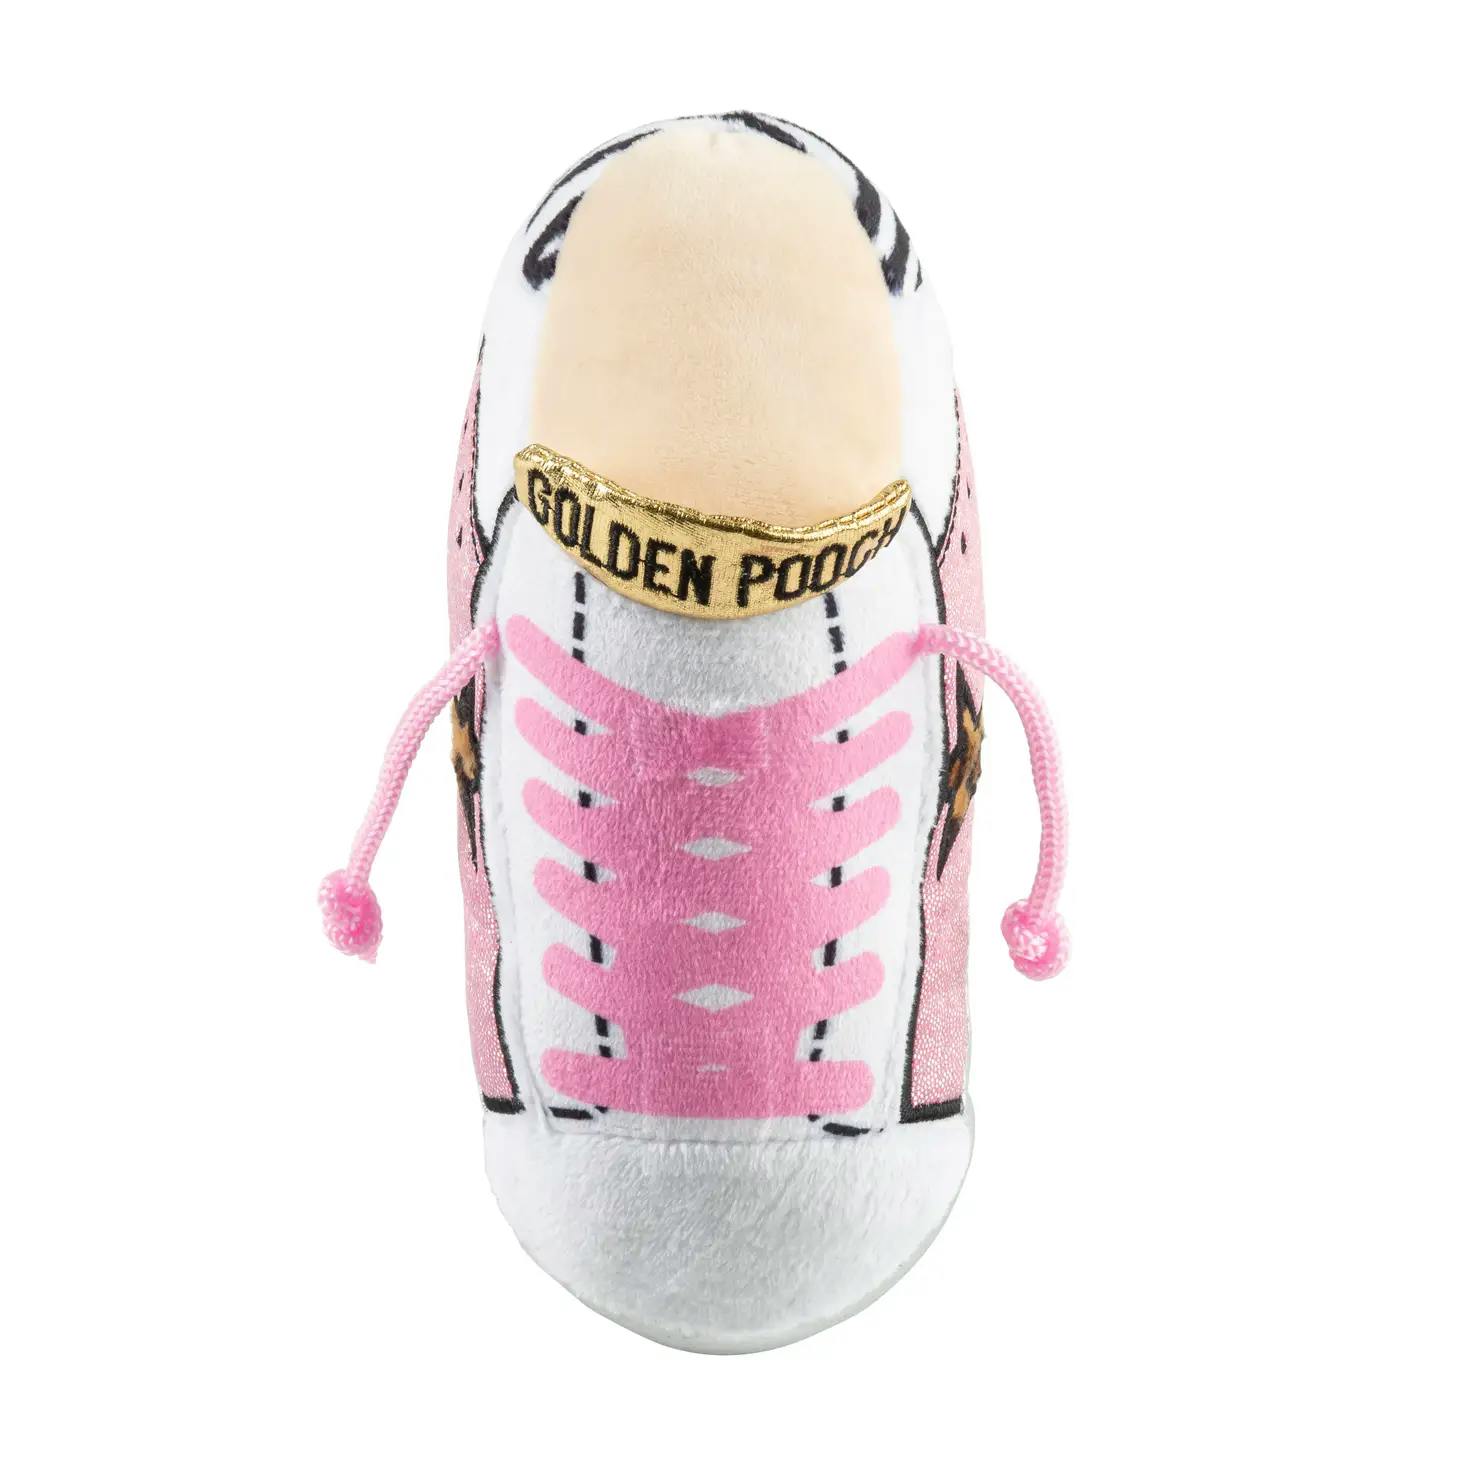 Haute Diggity Dog Golden Pooch Tennis Shoe Pink